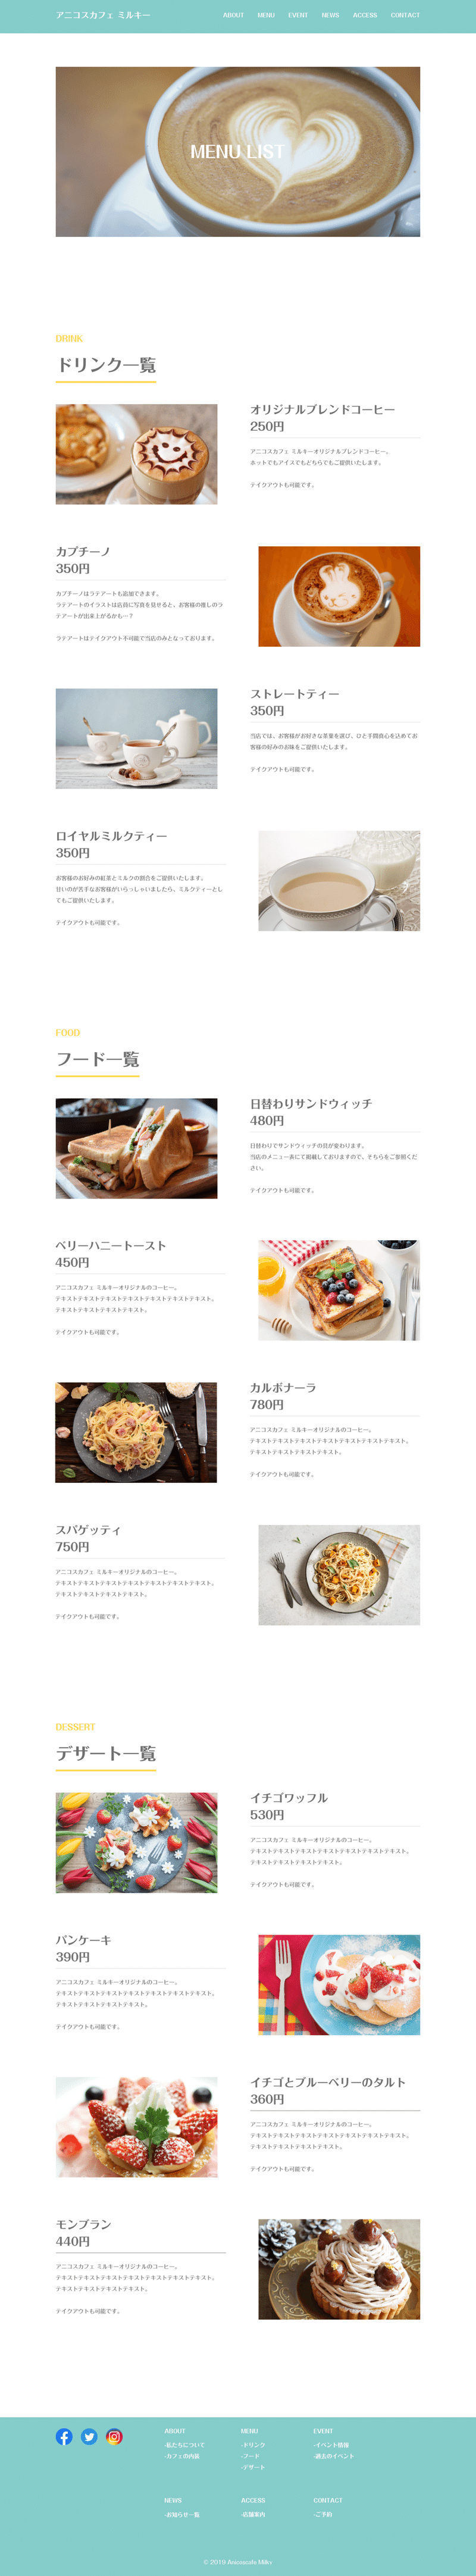 02 - menu - デザインカンプ